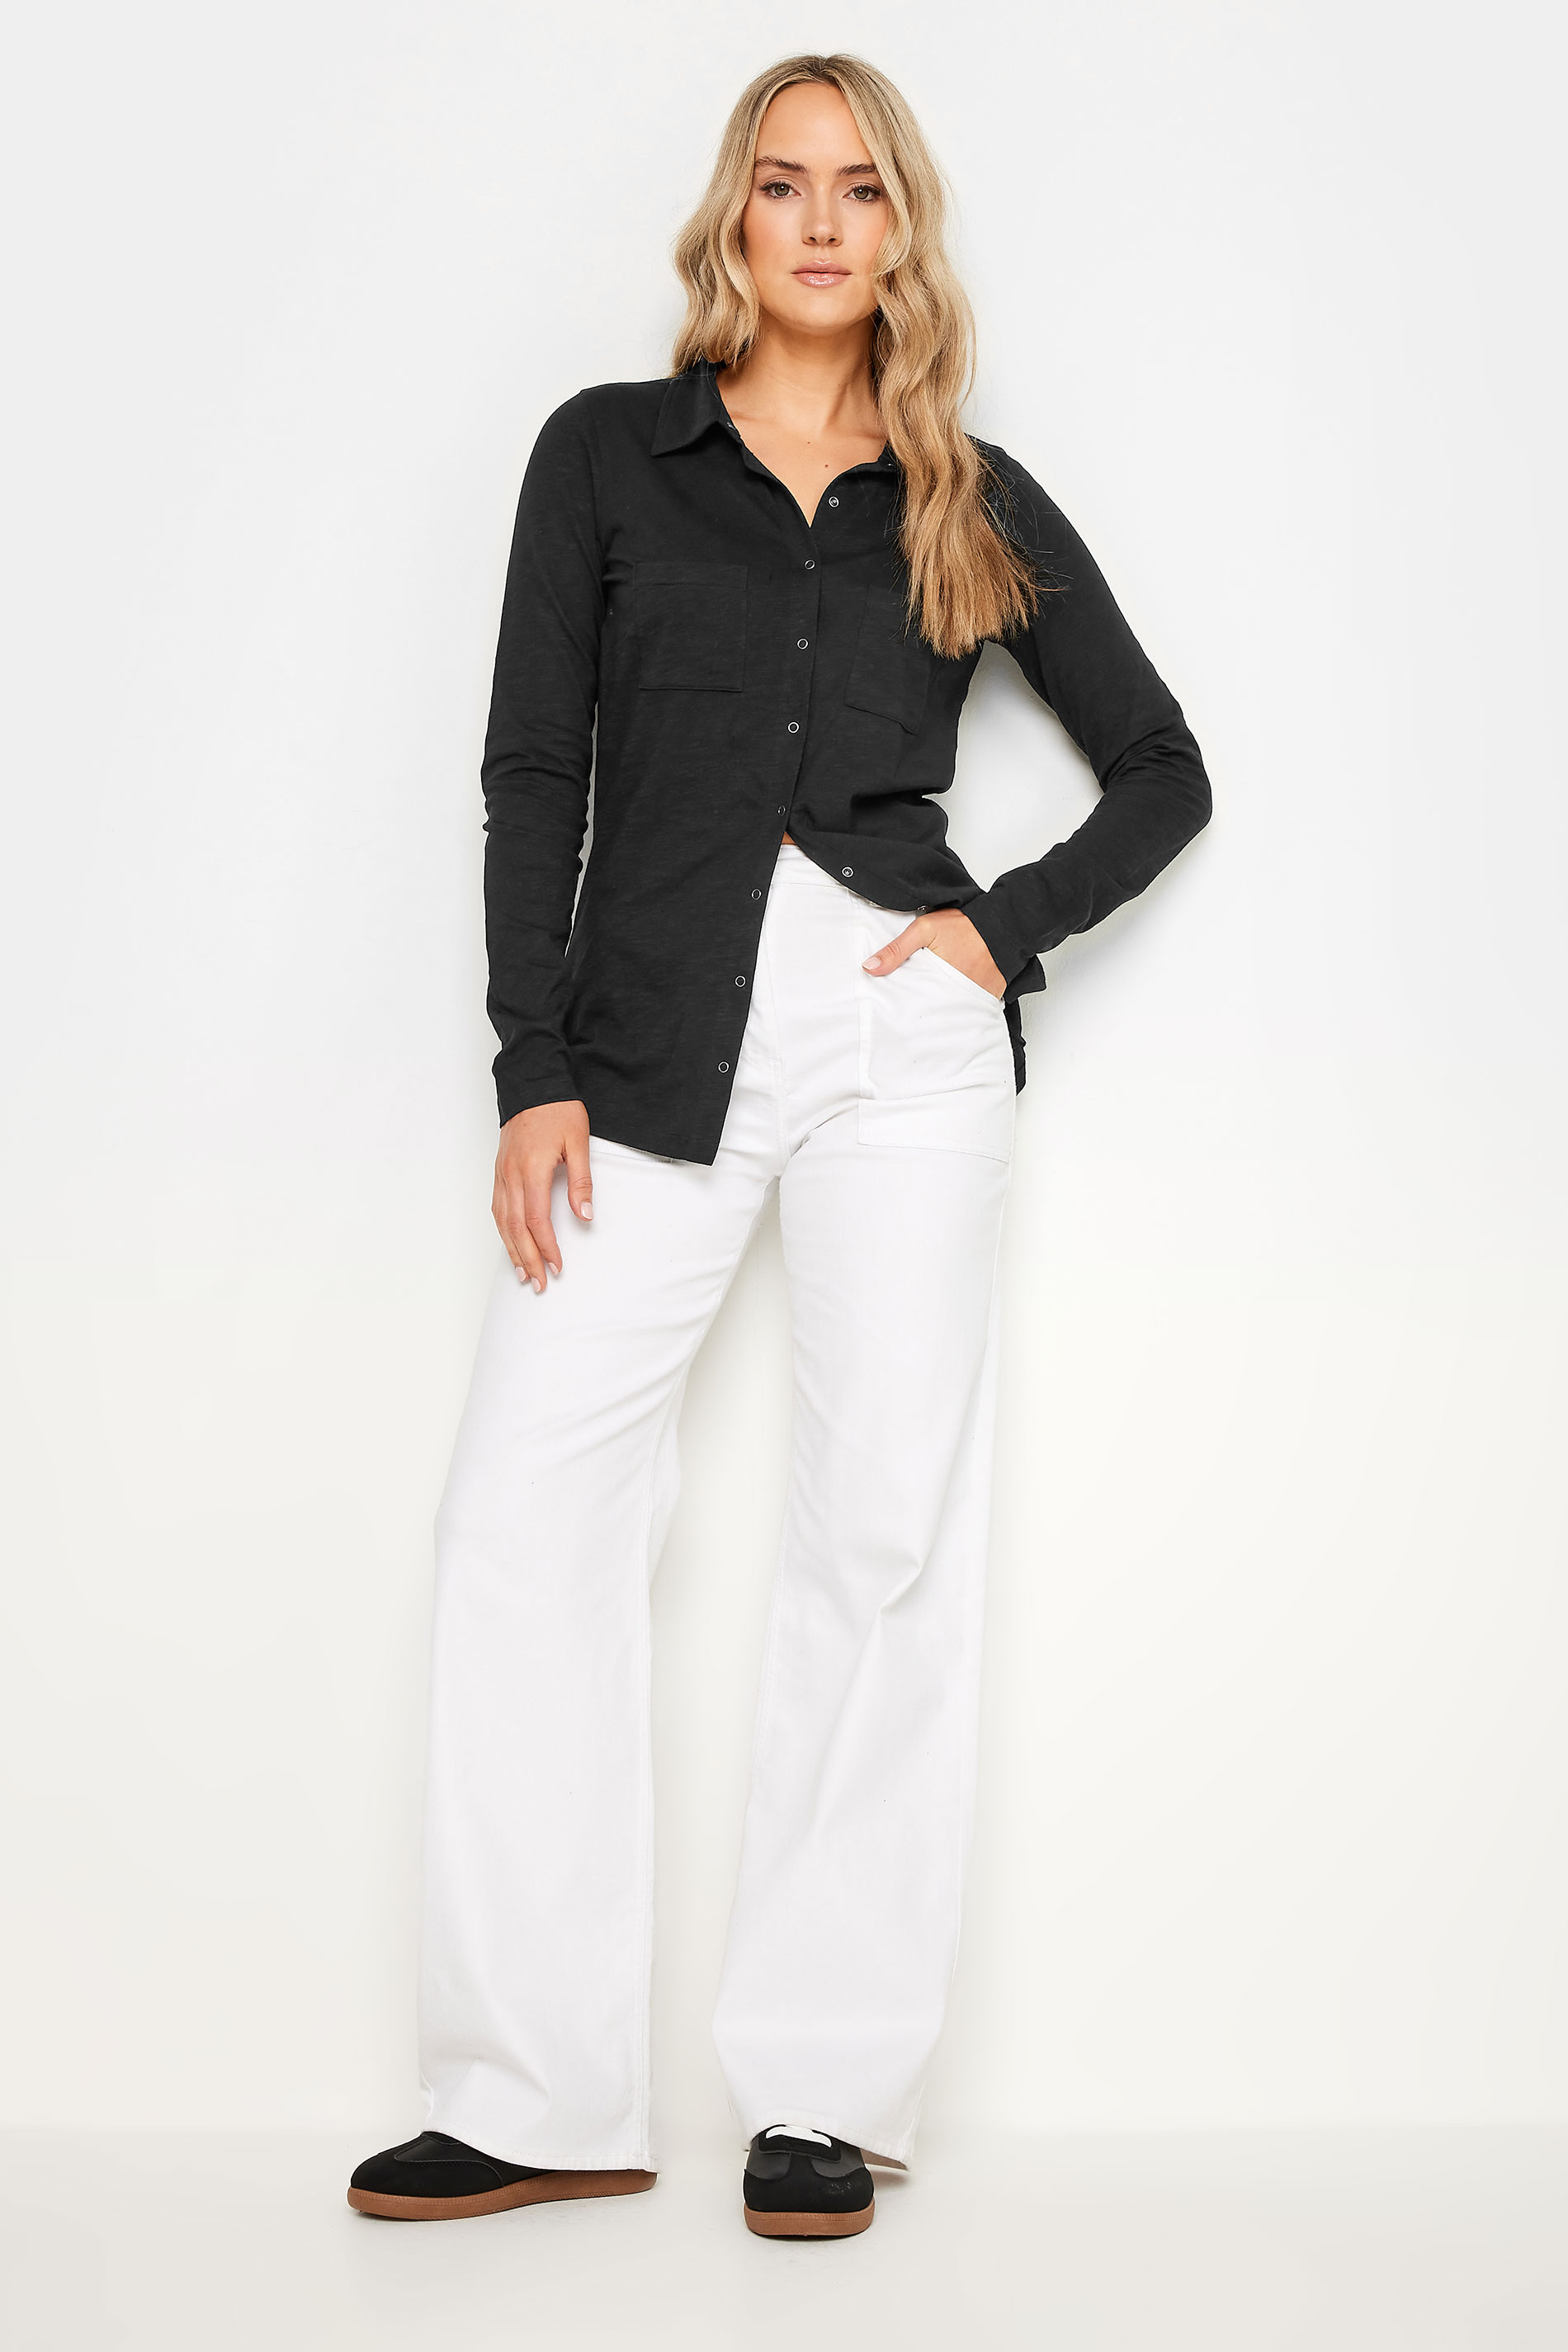 LTS Tall Women's Black Cotton Jersey Shirt | Long Tall Sally 2